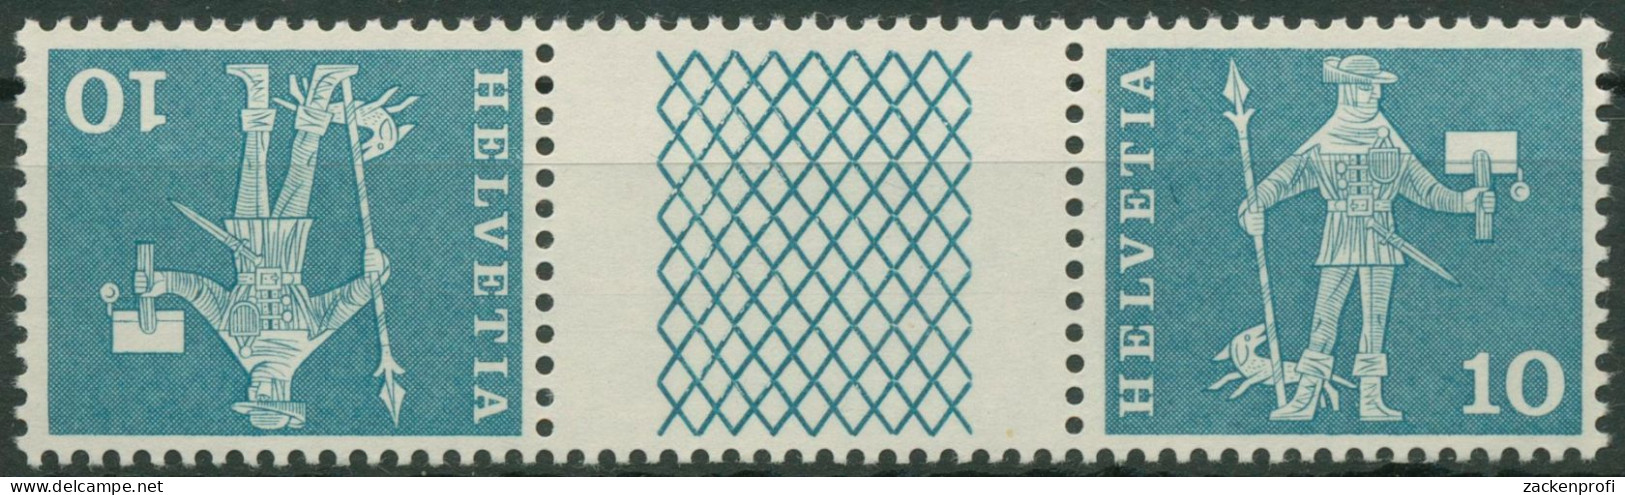 Schweiz 1960 Postmotive Postbote 697 Kehrdruck K 21 Y G Postfrisch - Nuovi